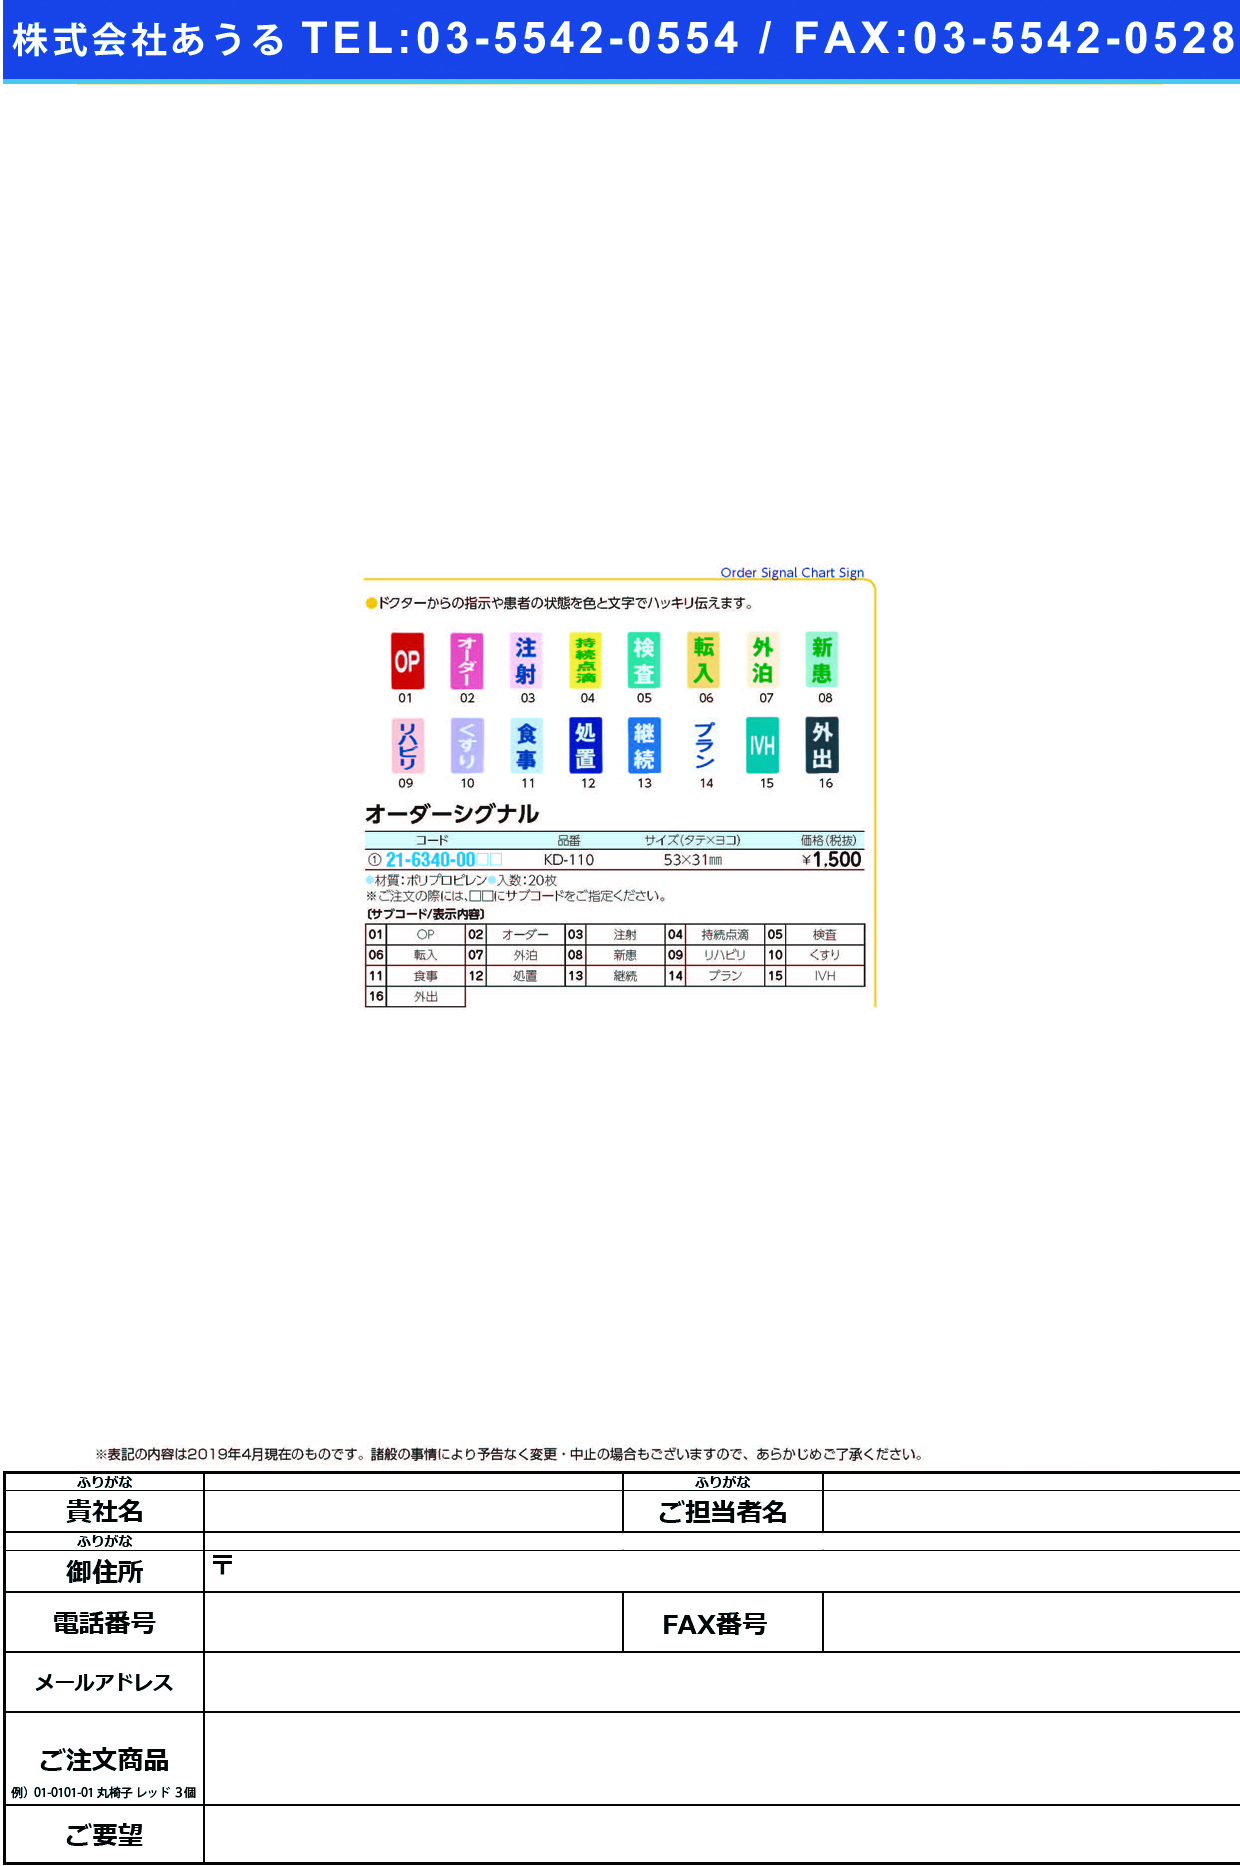 (21-6340-00)オーダーシグナル KD-110(20ﾏｲｲﾘ) ｵｰﾀﾞｰｼｸﾞﾅﾙ 処置(ケルン)【1袋単位】【2019年カタログ商品】